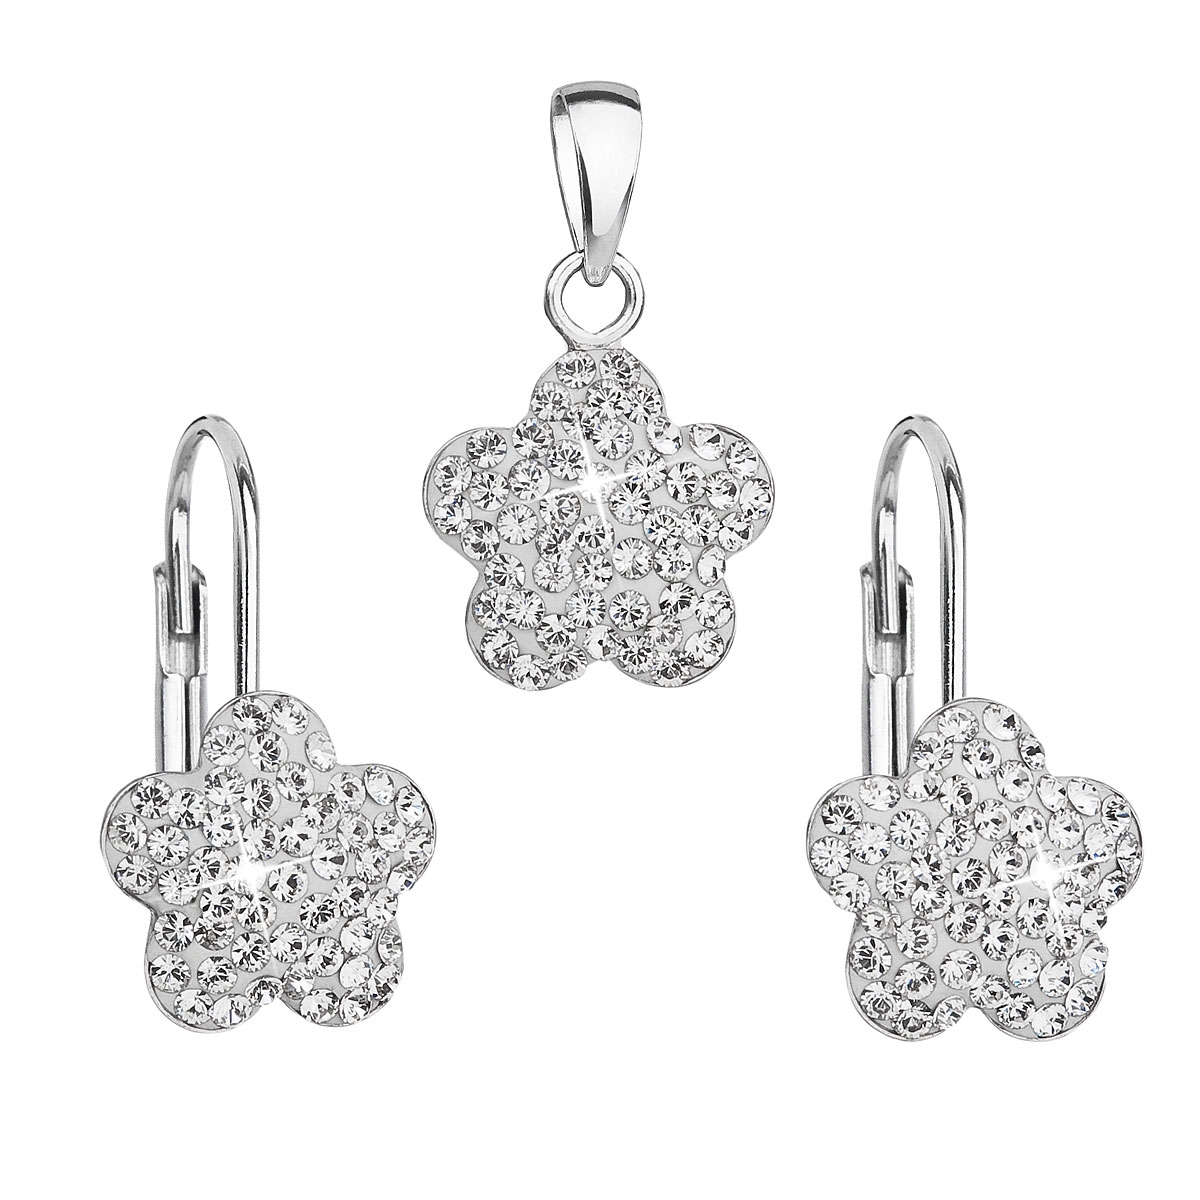 Súprava strieborných šperkov - kvetinky s kryštálmi Crystals from Swarovski ® Crystal